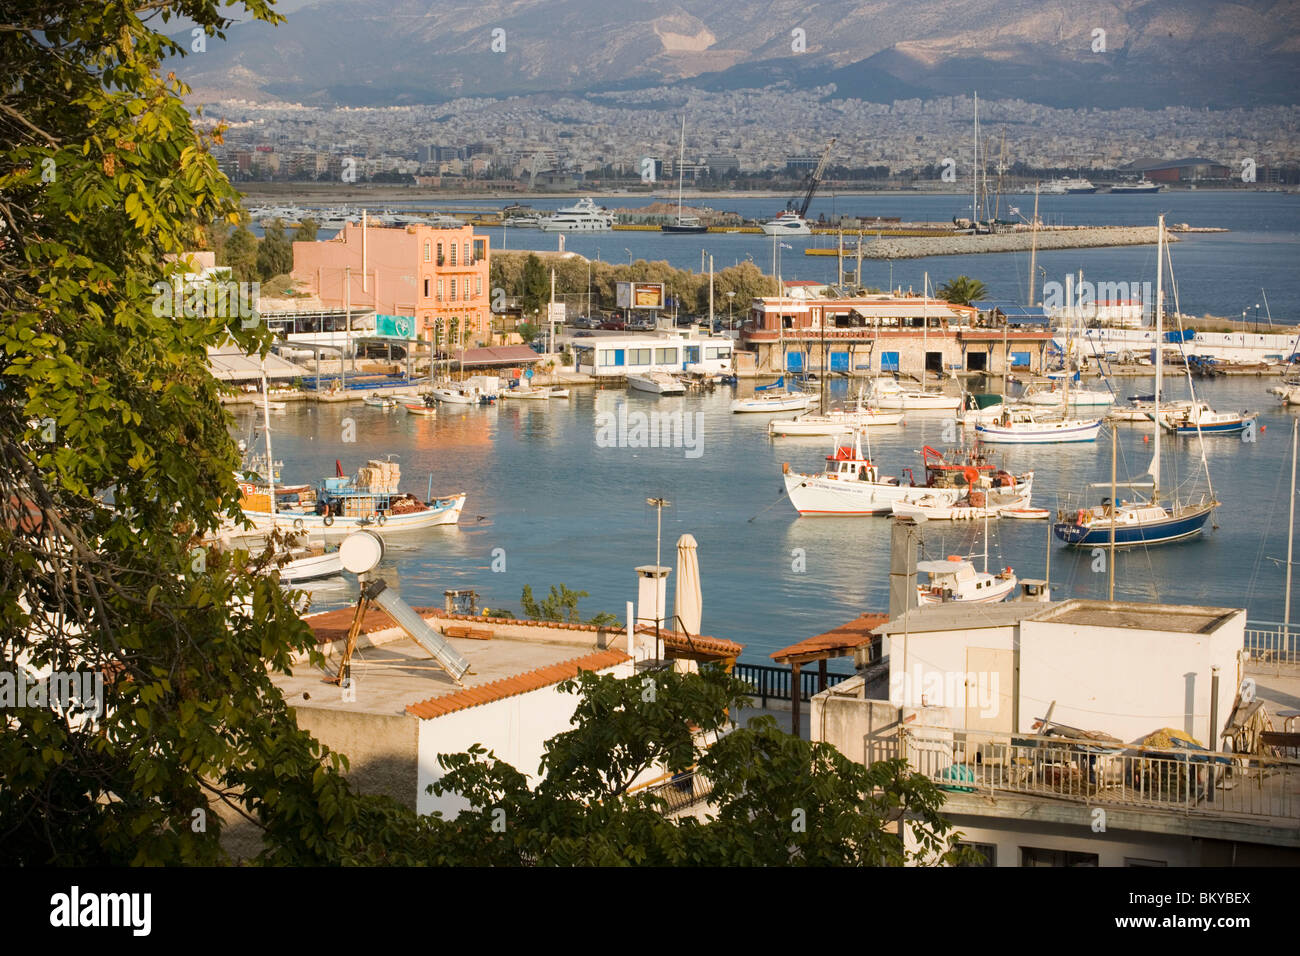 Ver insinde puerto del Pireo, el puerto de Atenas, Pireas, Athens-Piraeus,  Grecia Fotografía de stock - Alamy